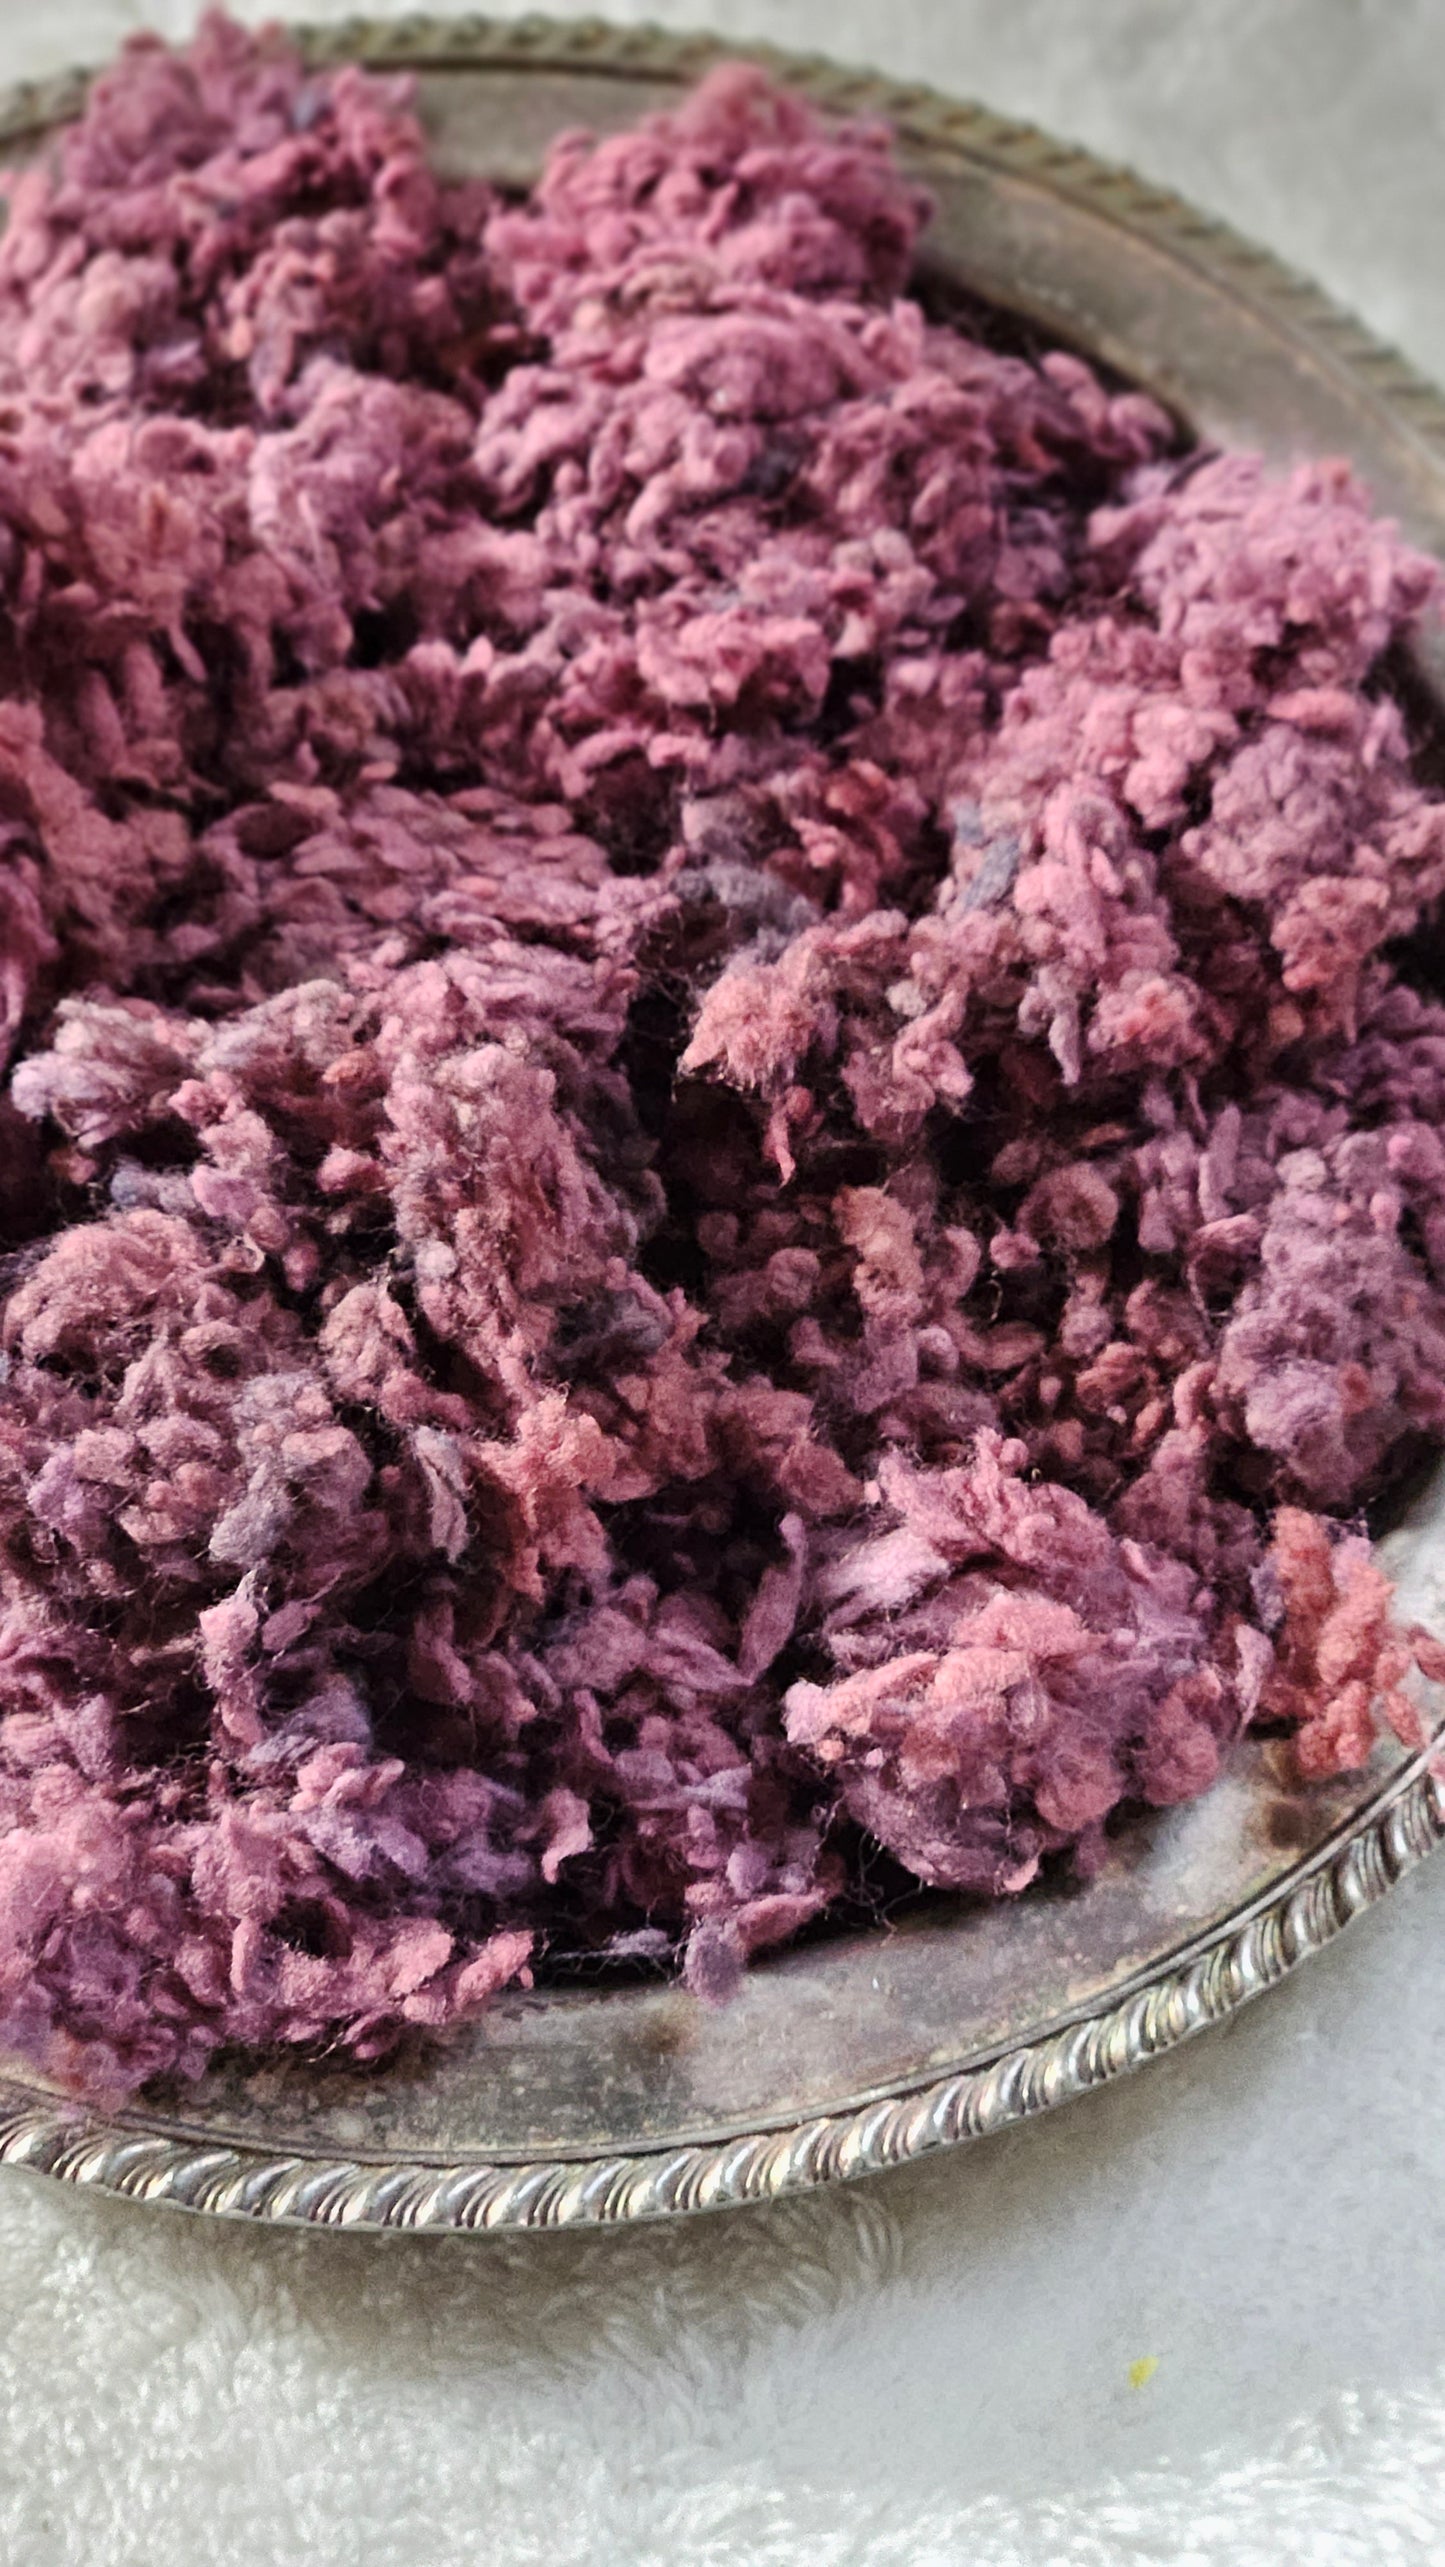 OXALIS - Dyed Cotton Nepps - 1 oz